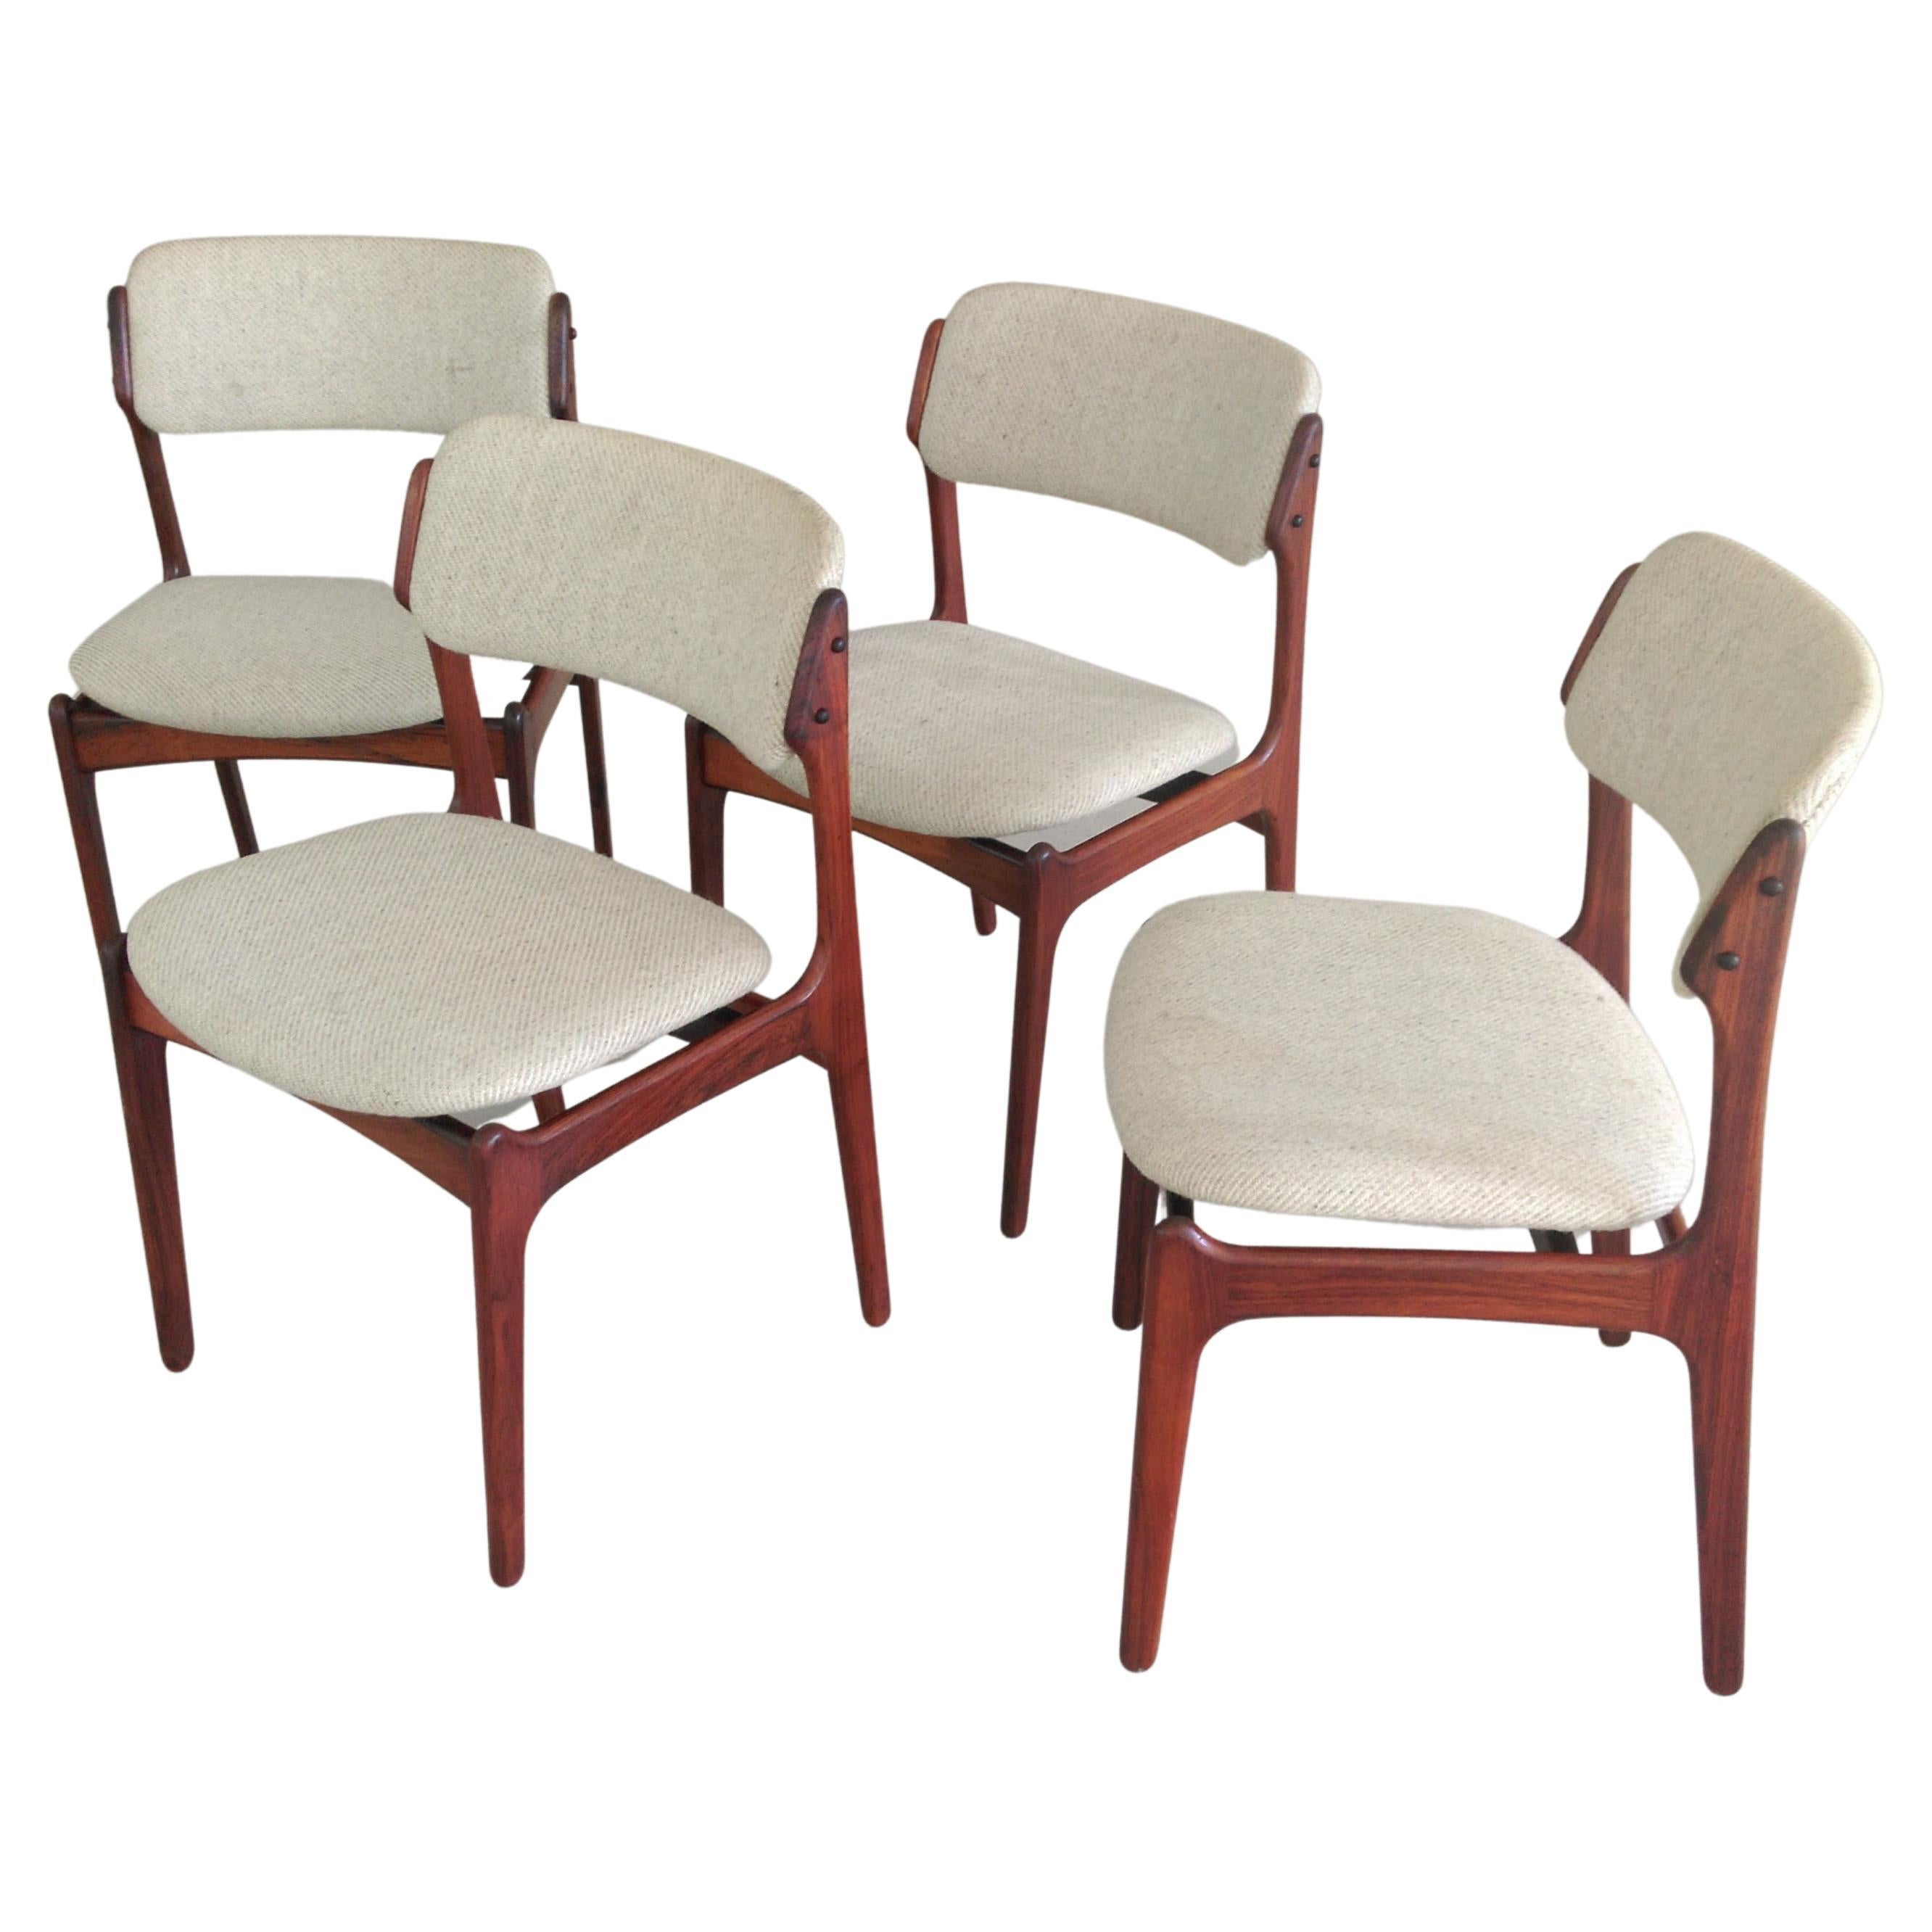 Quatre chaises de salle à manger Erik Buch restaurées en palissandre, retapissées sur mesure incluses